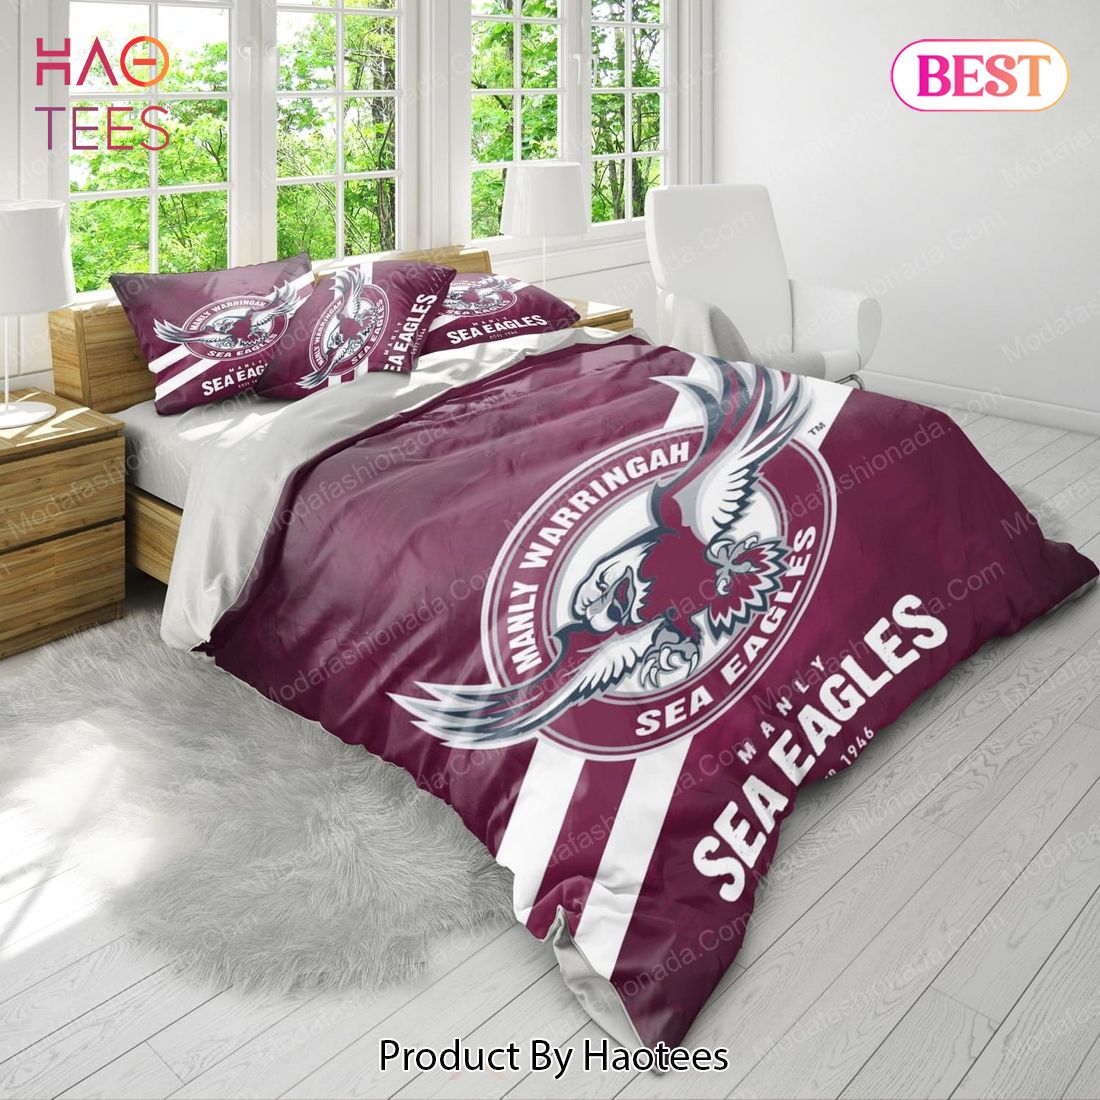 Manly Warringah Sea Eagles Bedding Sets Bed Sets, Bedroom Sets, Comforter Sets, Duvet Cover, Bedspread